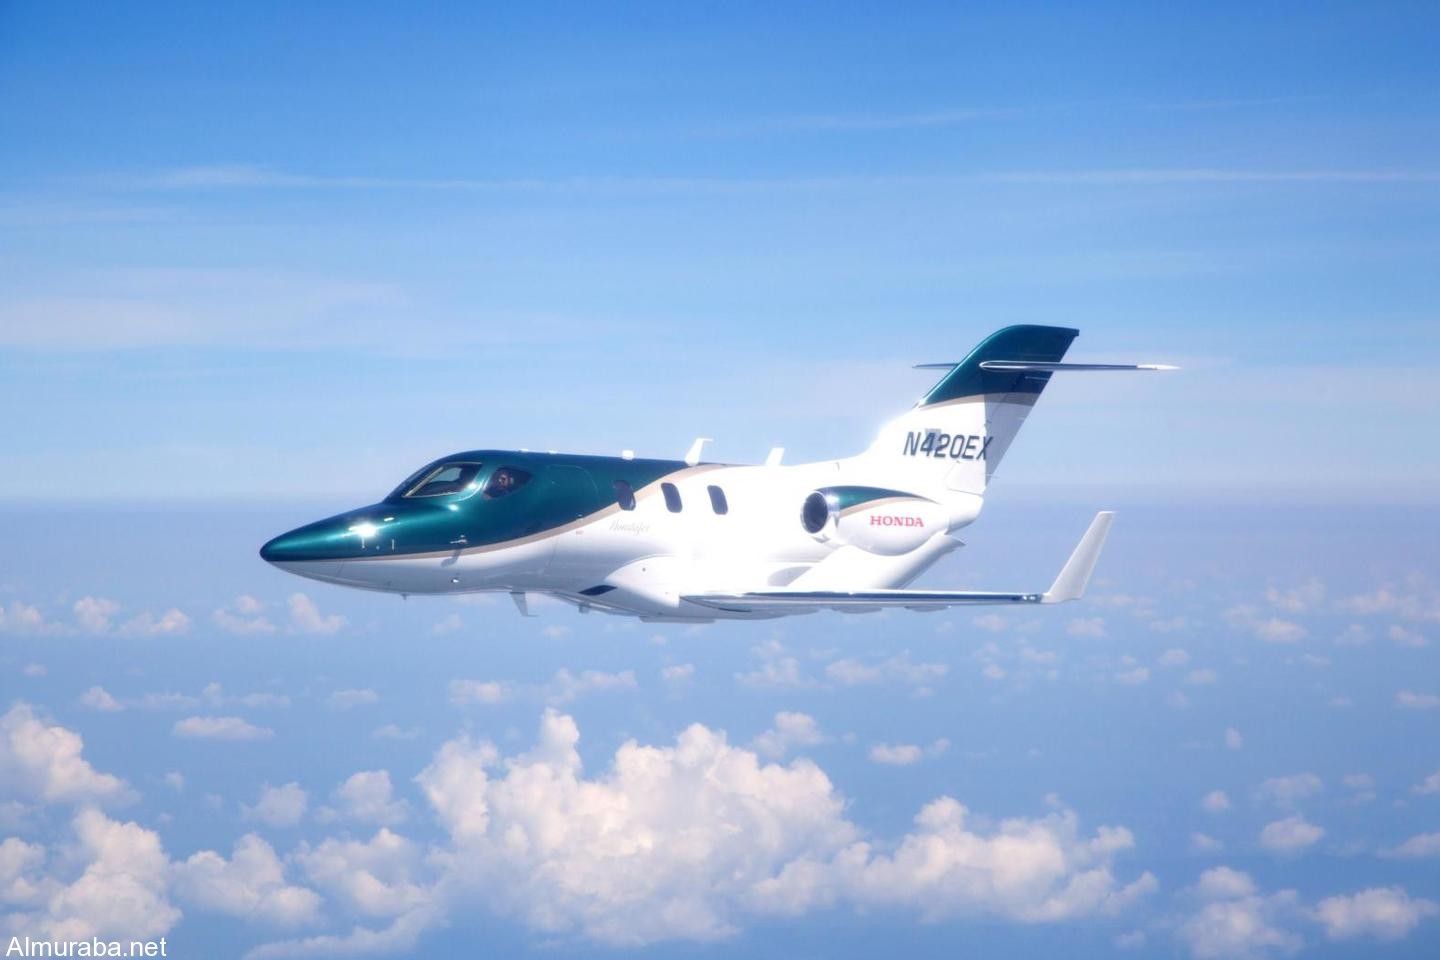 شركة "هوندا" تسلم أولى طائراتها الخاصة "هوندا جيت"بعد تطوير دام عشرين عاماً HondaJet 1